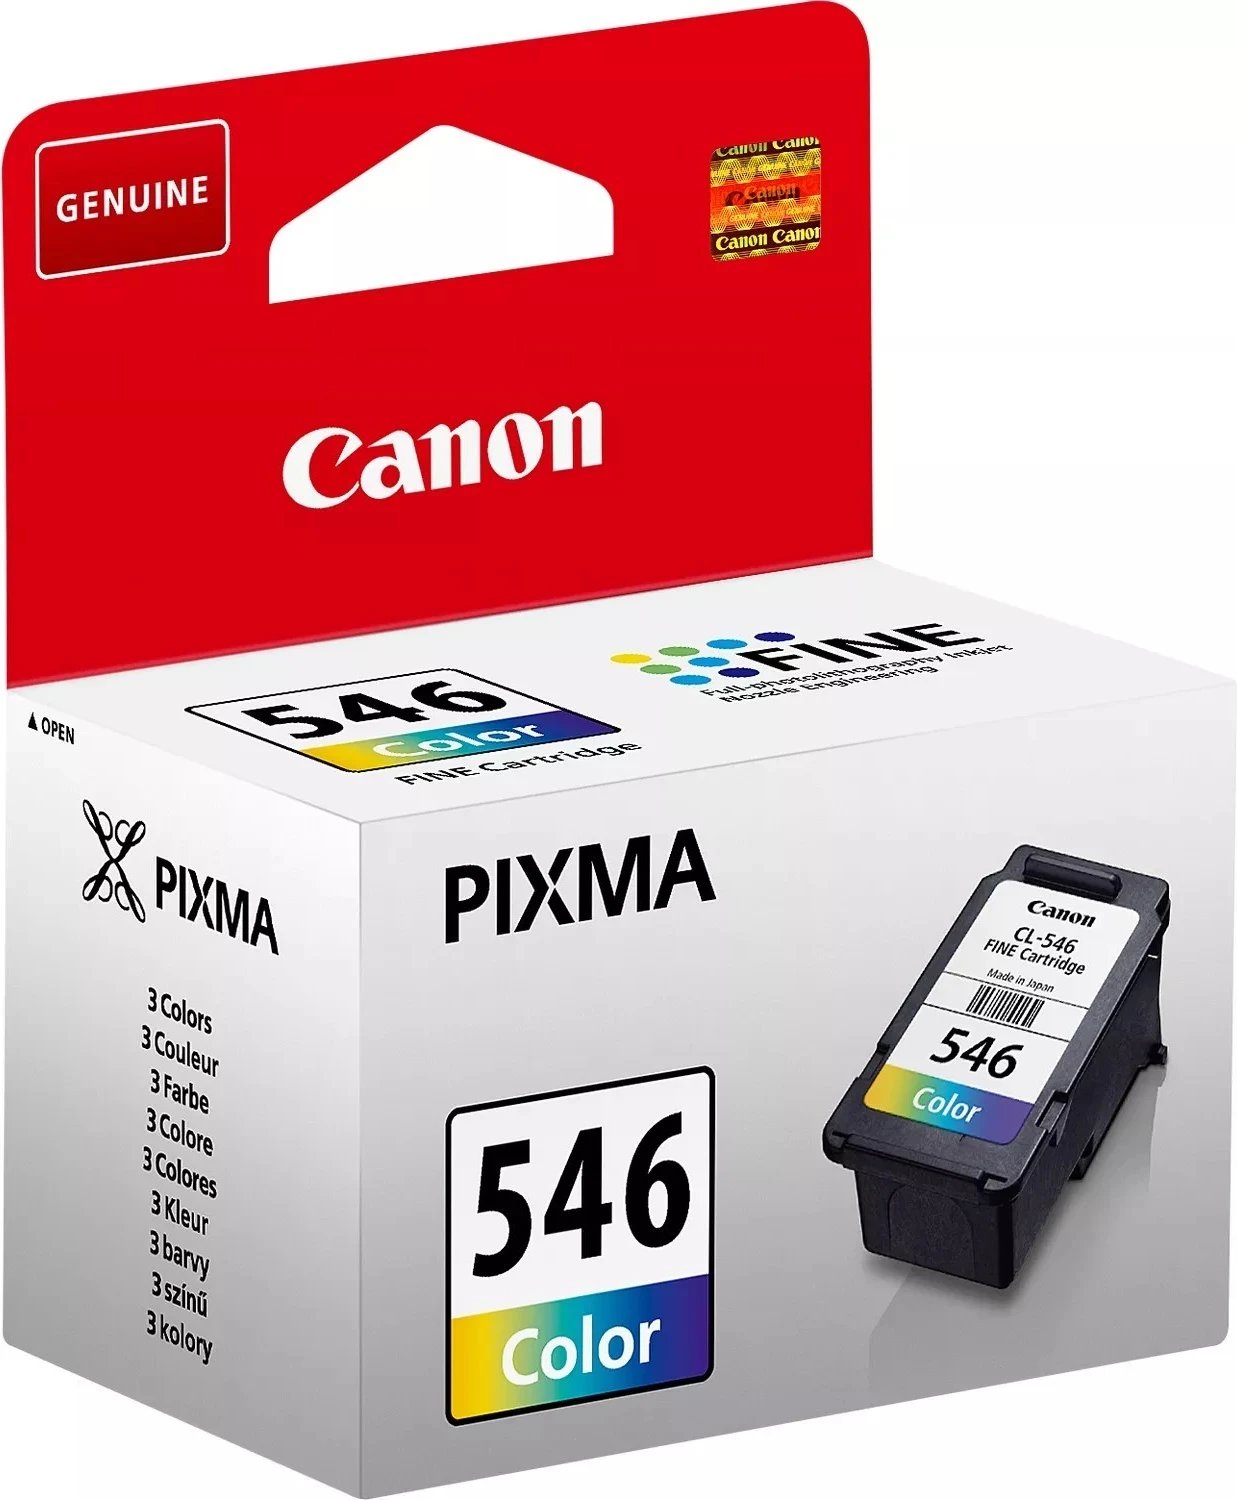 Ngjyrë për printer  Canon CL-546